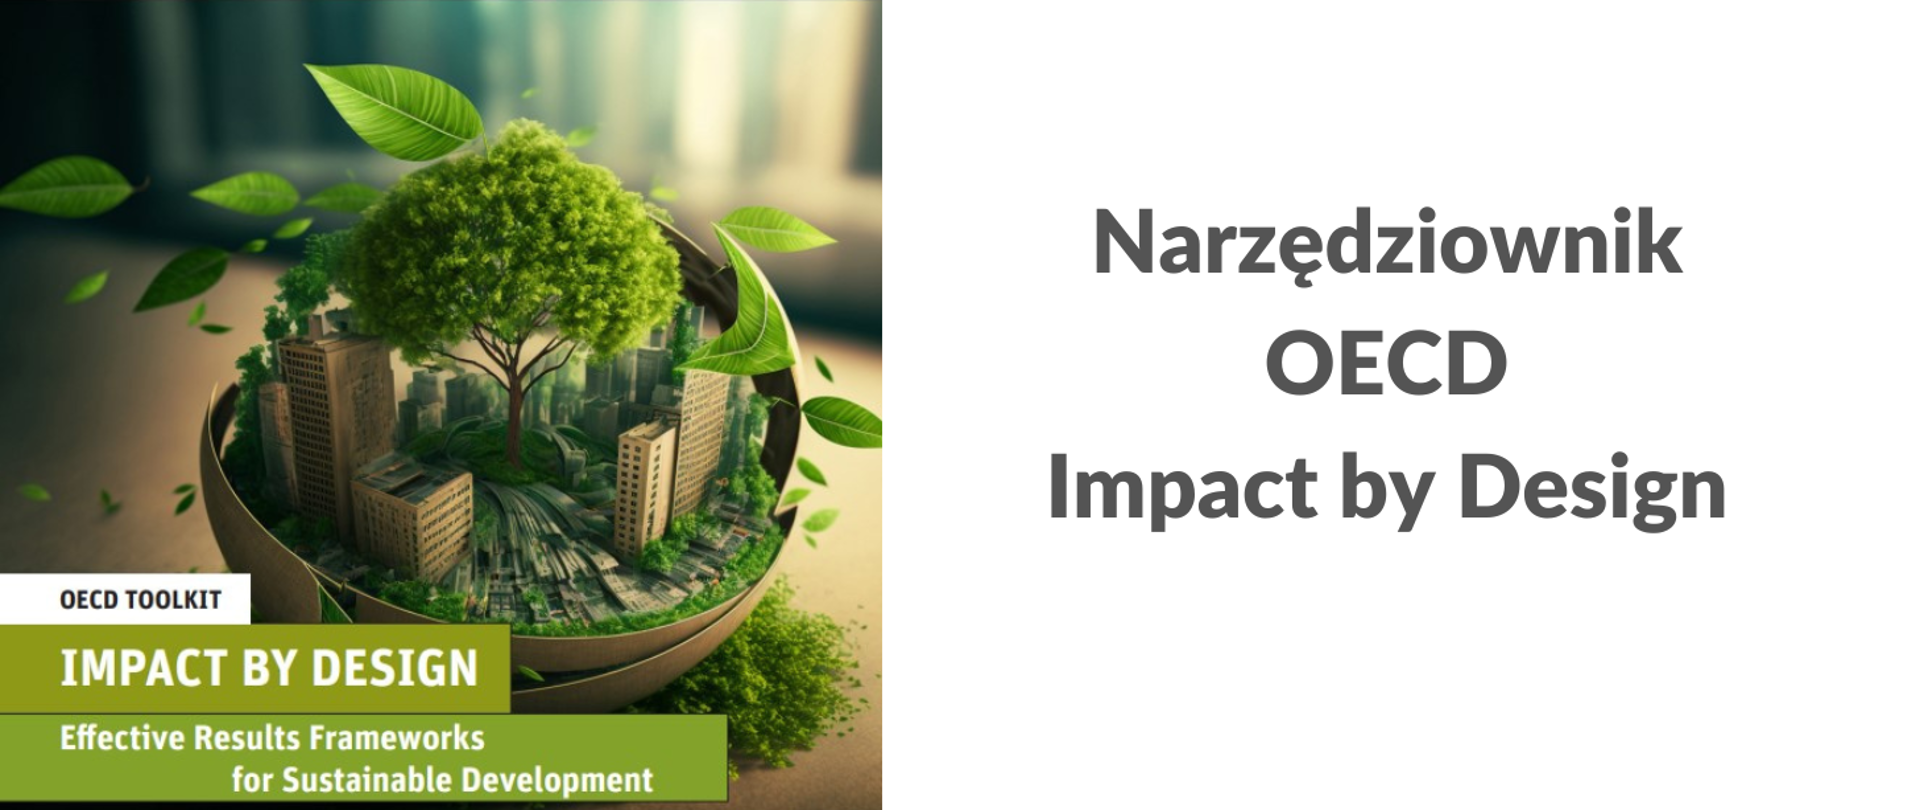 Po lewej stronie zdjęcie przedstawia miasto otoczone zielenią a wszystko znajduje się w kuli. Po prawej stronie widnieje napis "Narzędziownik OECD Impact by Design" 